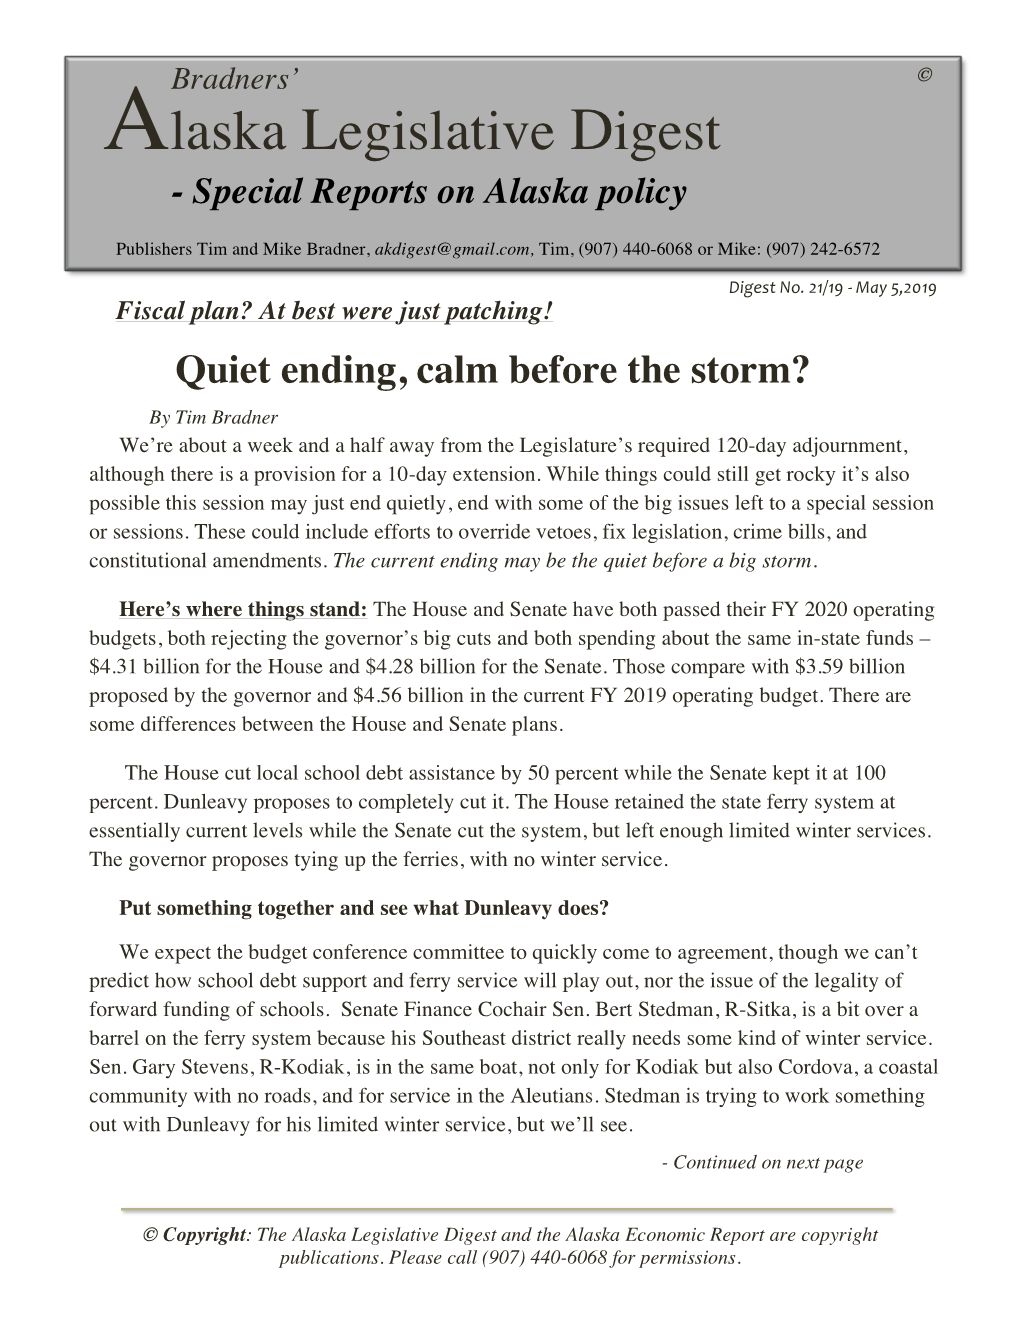 Alaska Legislative Digest - Special Reports on Alaska Policy